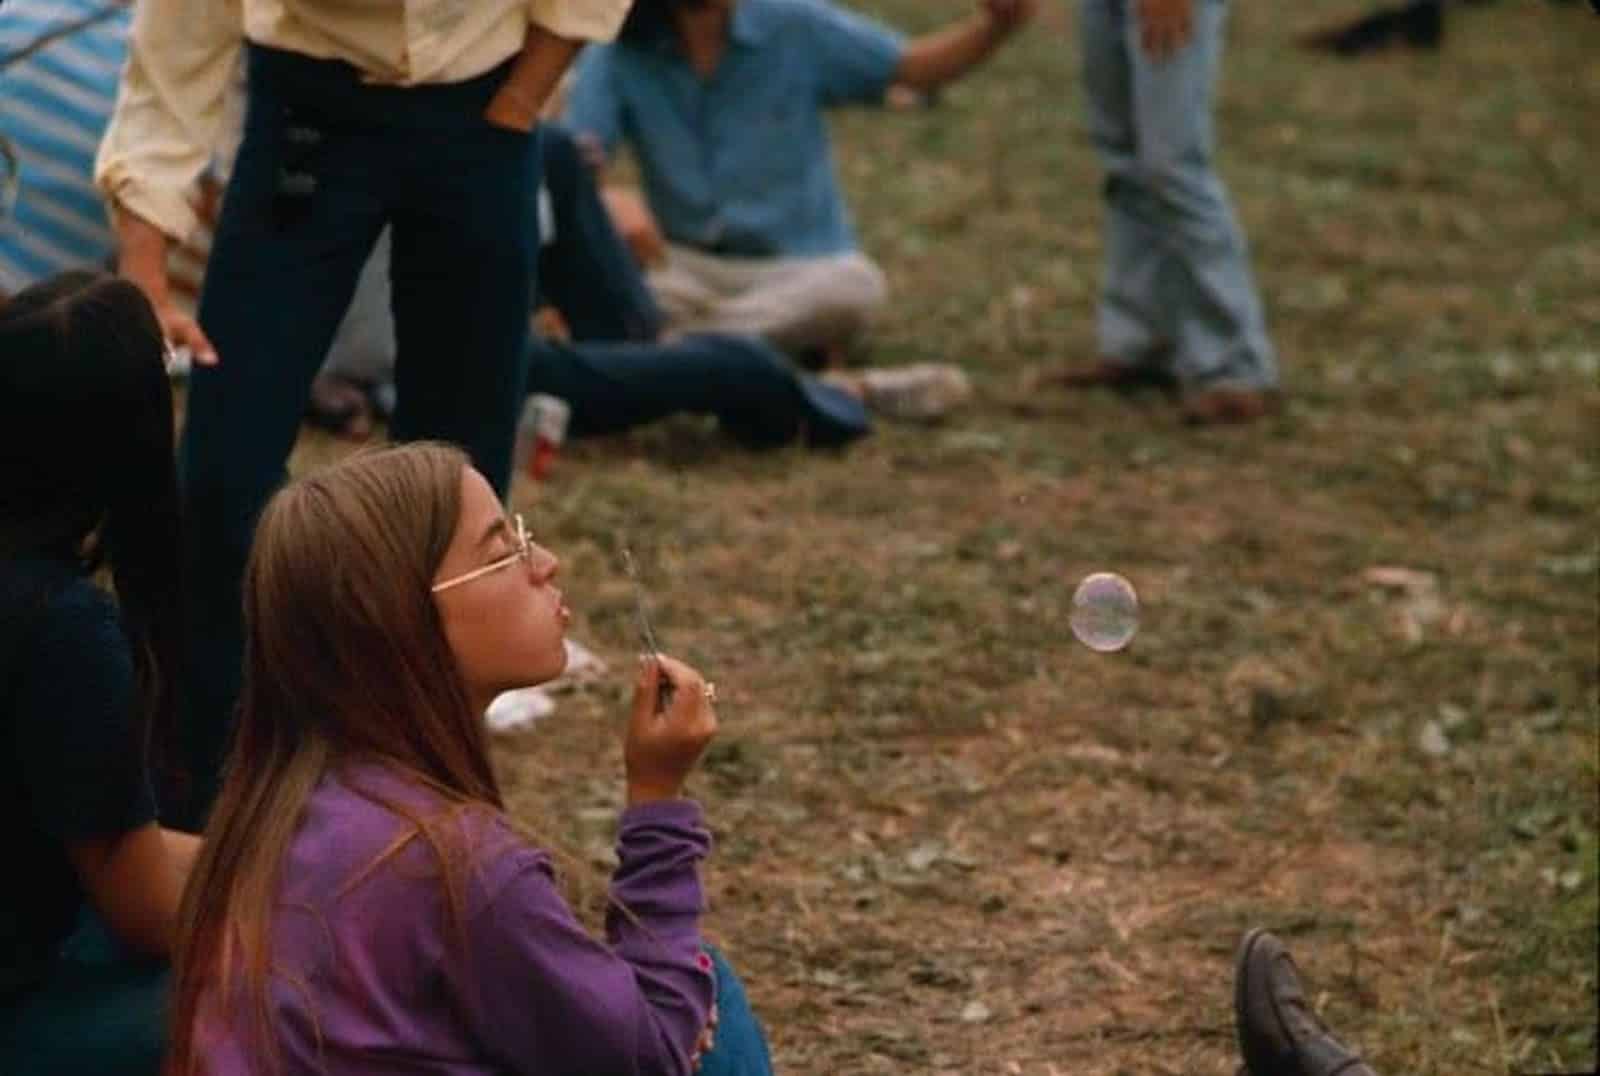 50 anos depois do festival woodstock- 3 dias de paz e música